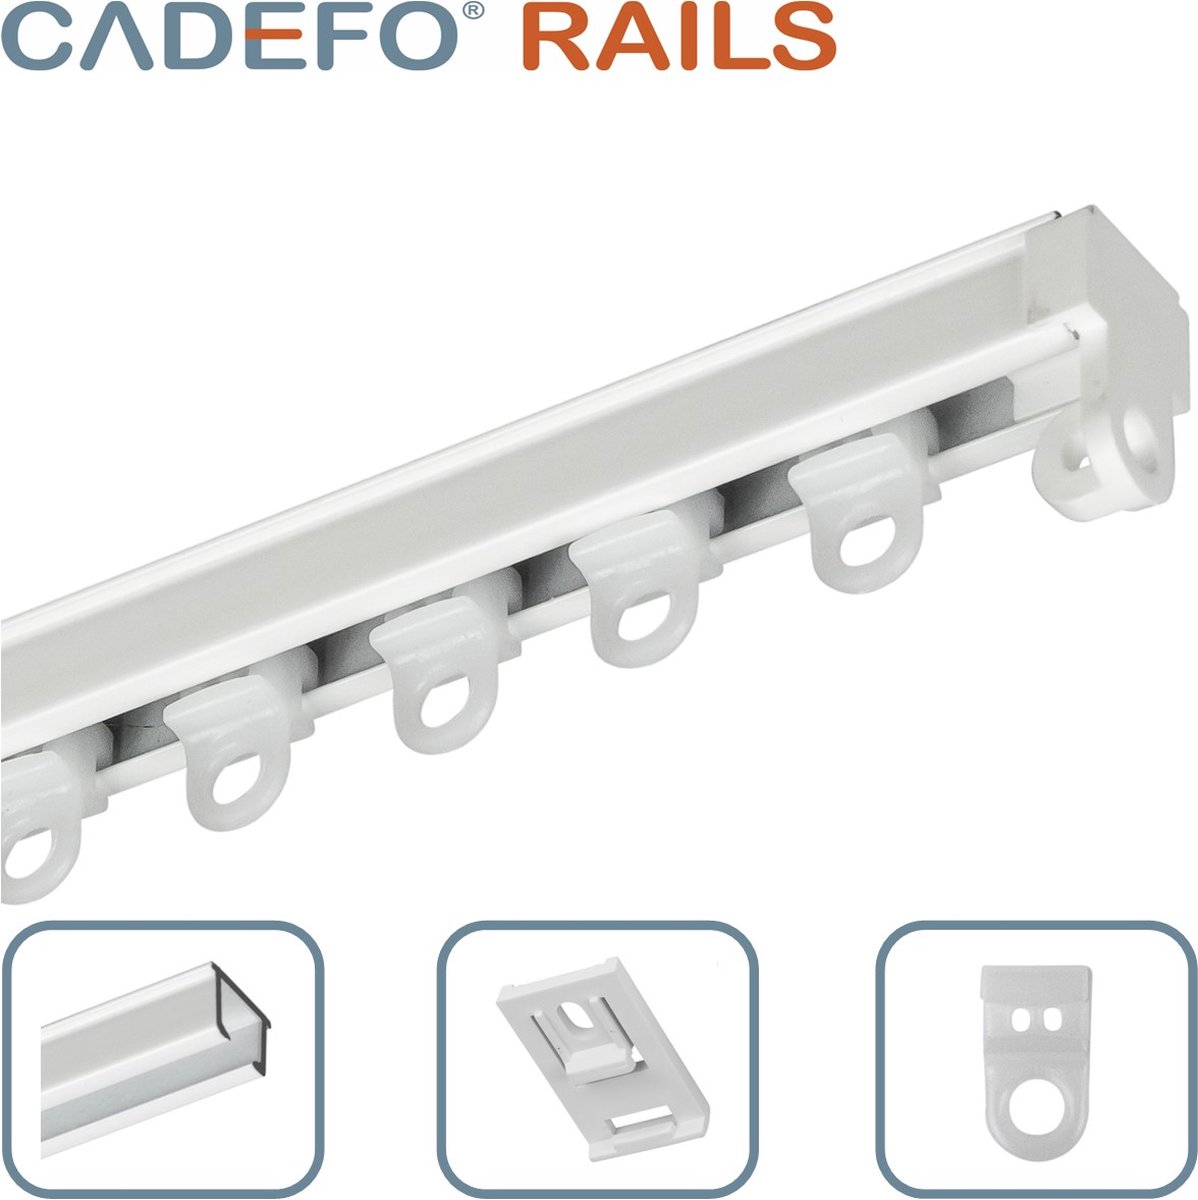 CADEFO RAILS (451 - 500 cm) Gordijnrails - Compleet op maat! - UIT 1 STUK - Leverbaar tot 6 meter - Plafondbevestiging - Lengte 491 cm